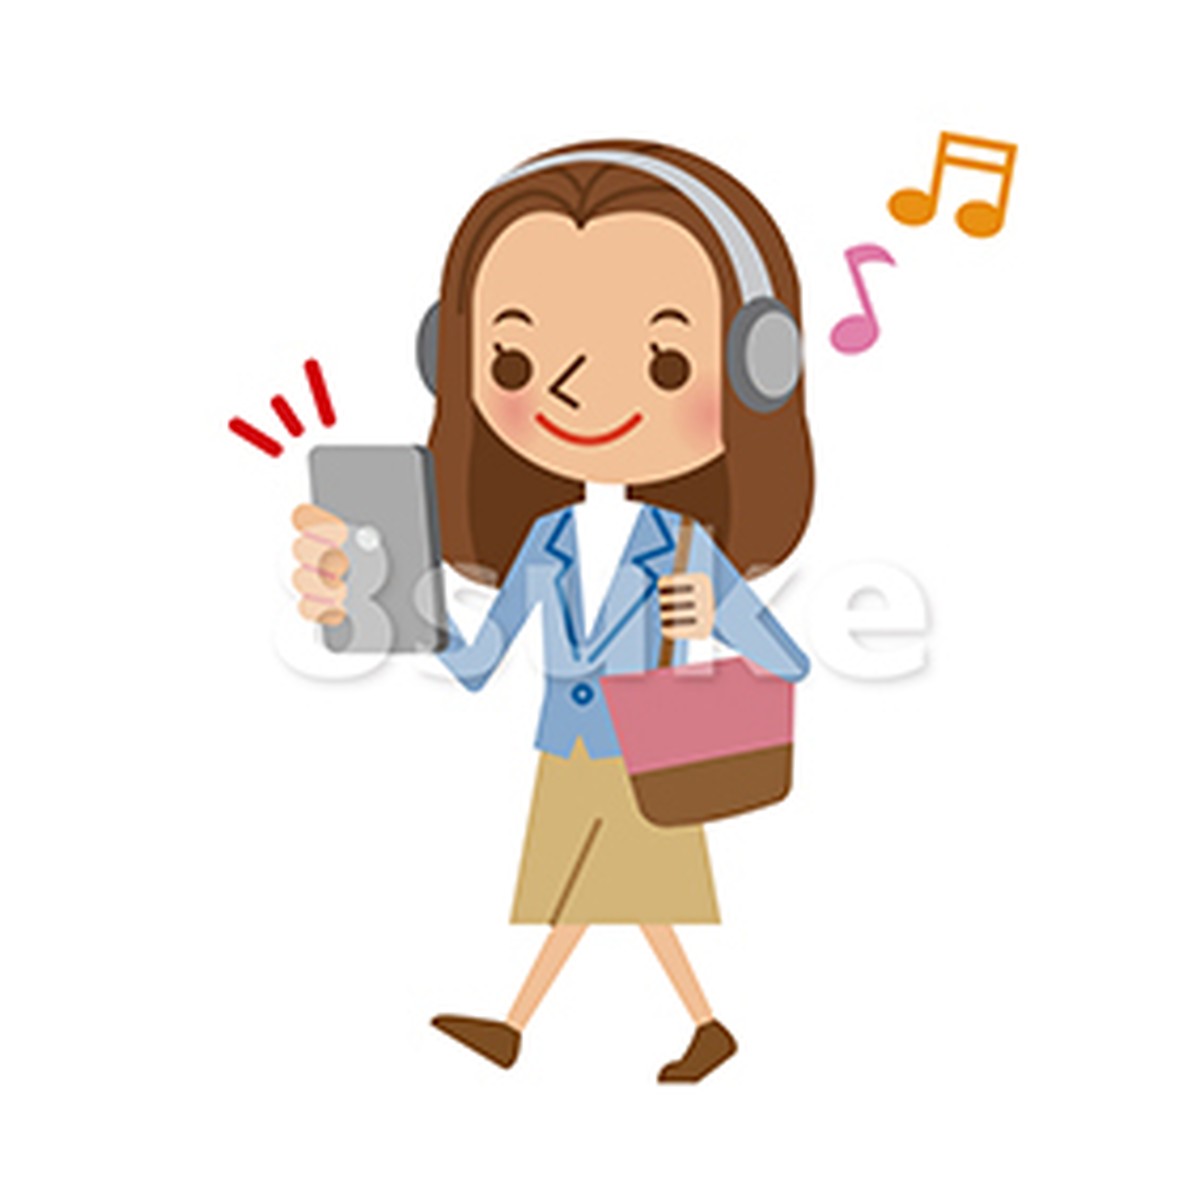 イラスト素材 スマートフォンで音楽を聴きながら歩く若い女性